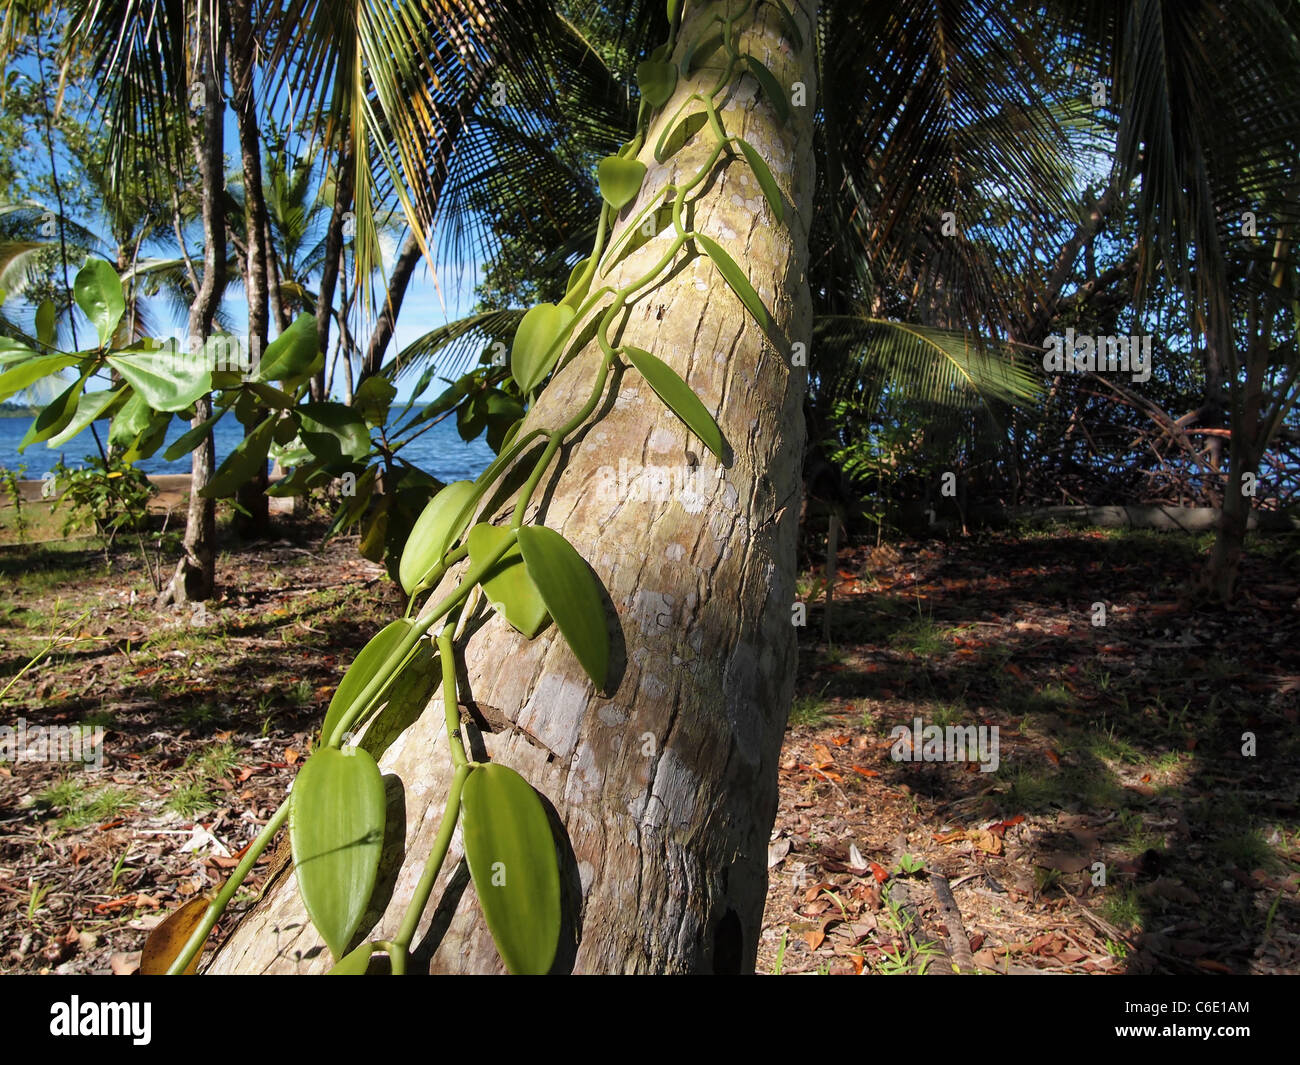 Vanilla climbing a coconut tree near ocean Stock Photo